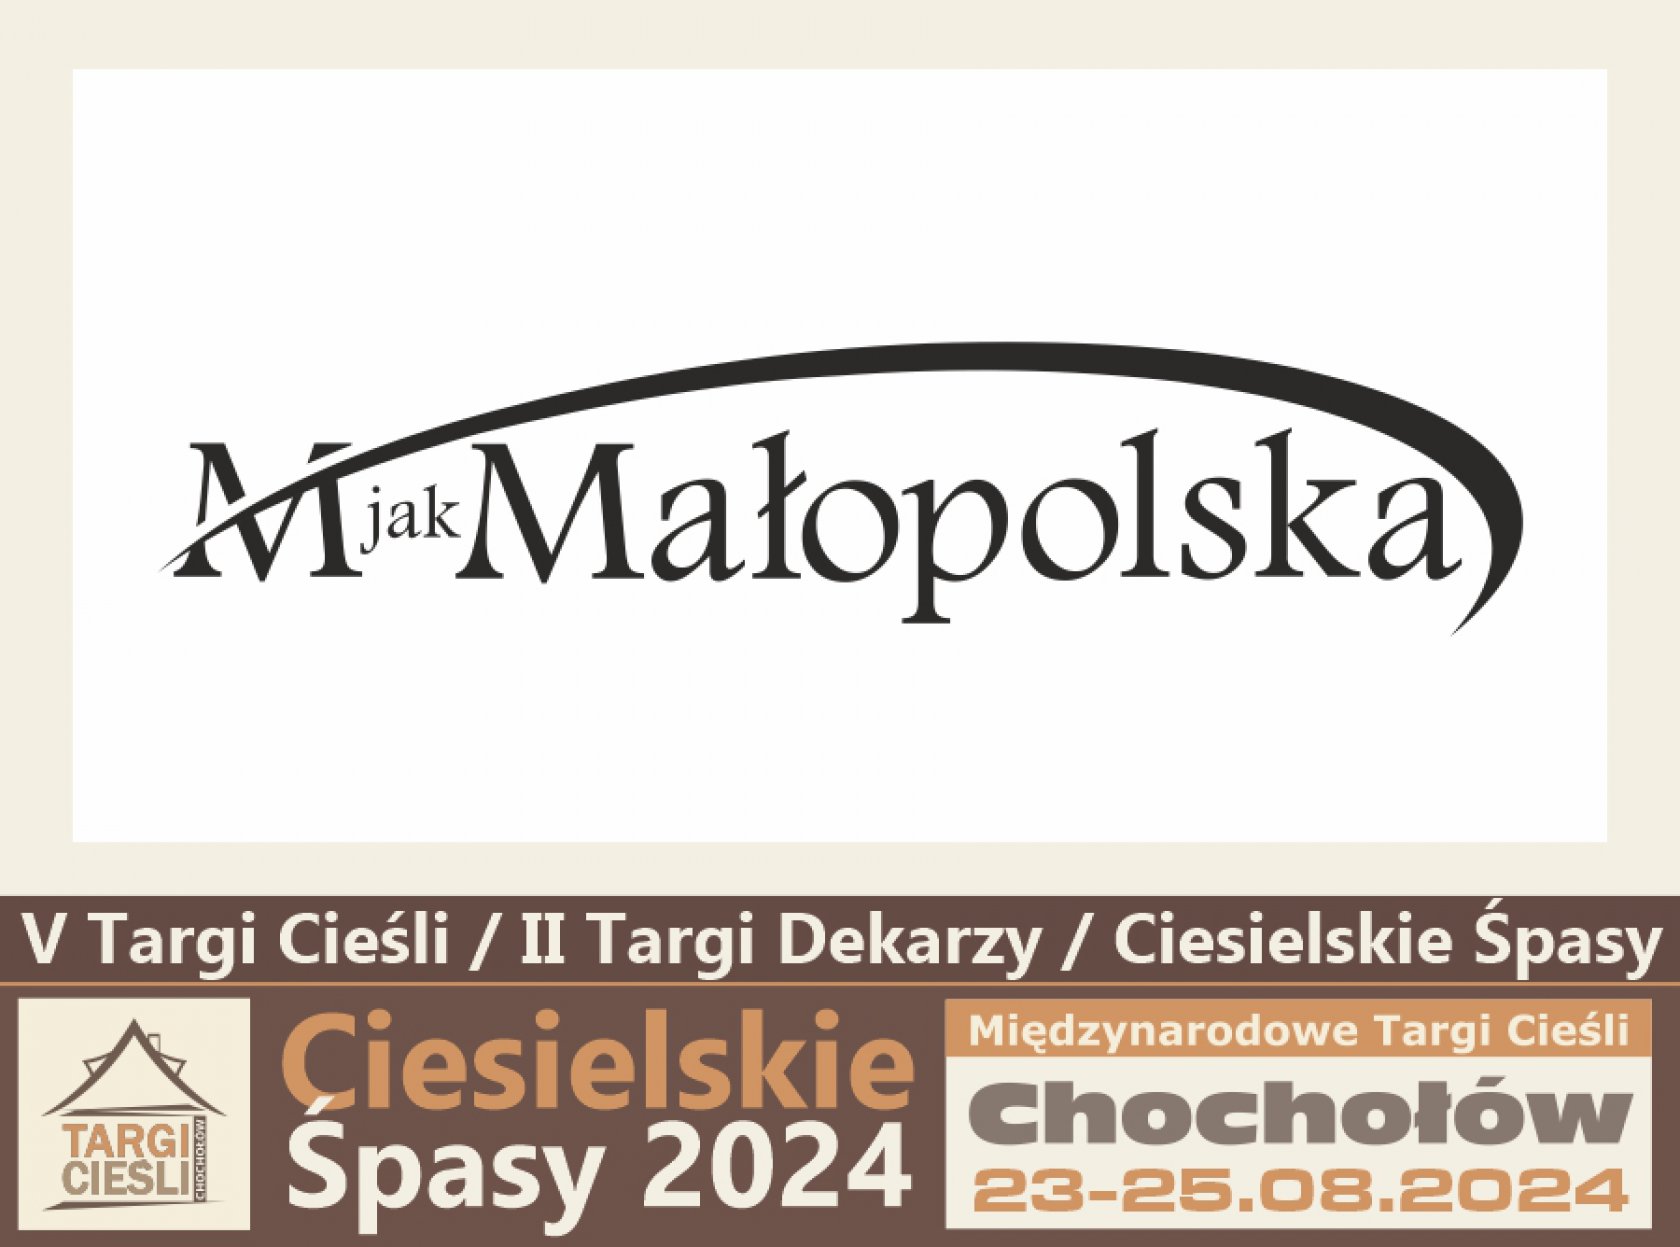 Zdjęcie dla Mocny krok marketingowy z portalem MjakMalopolska